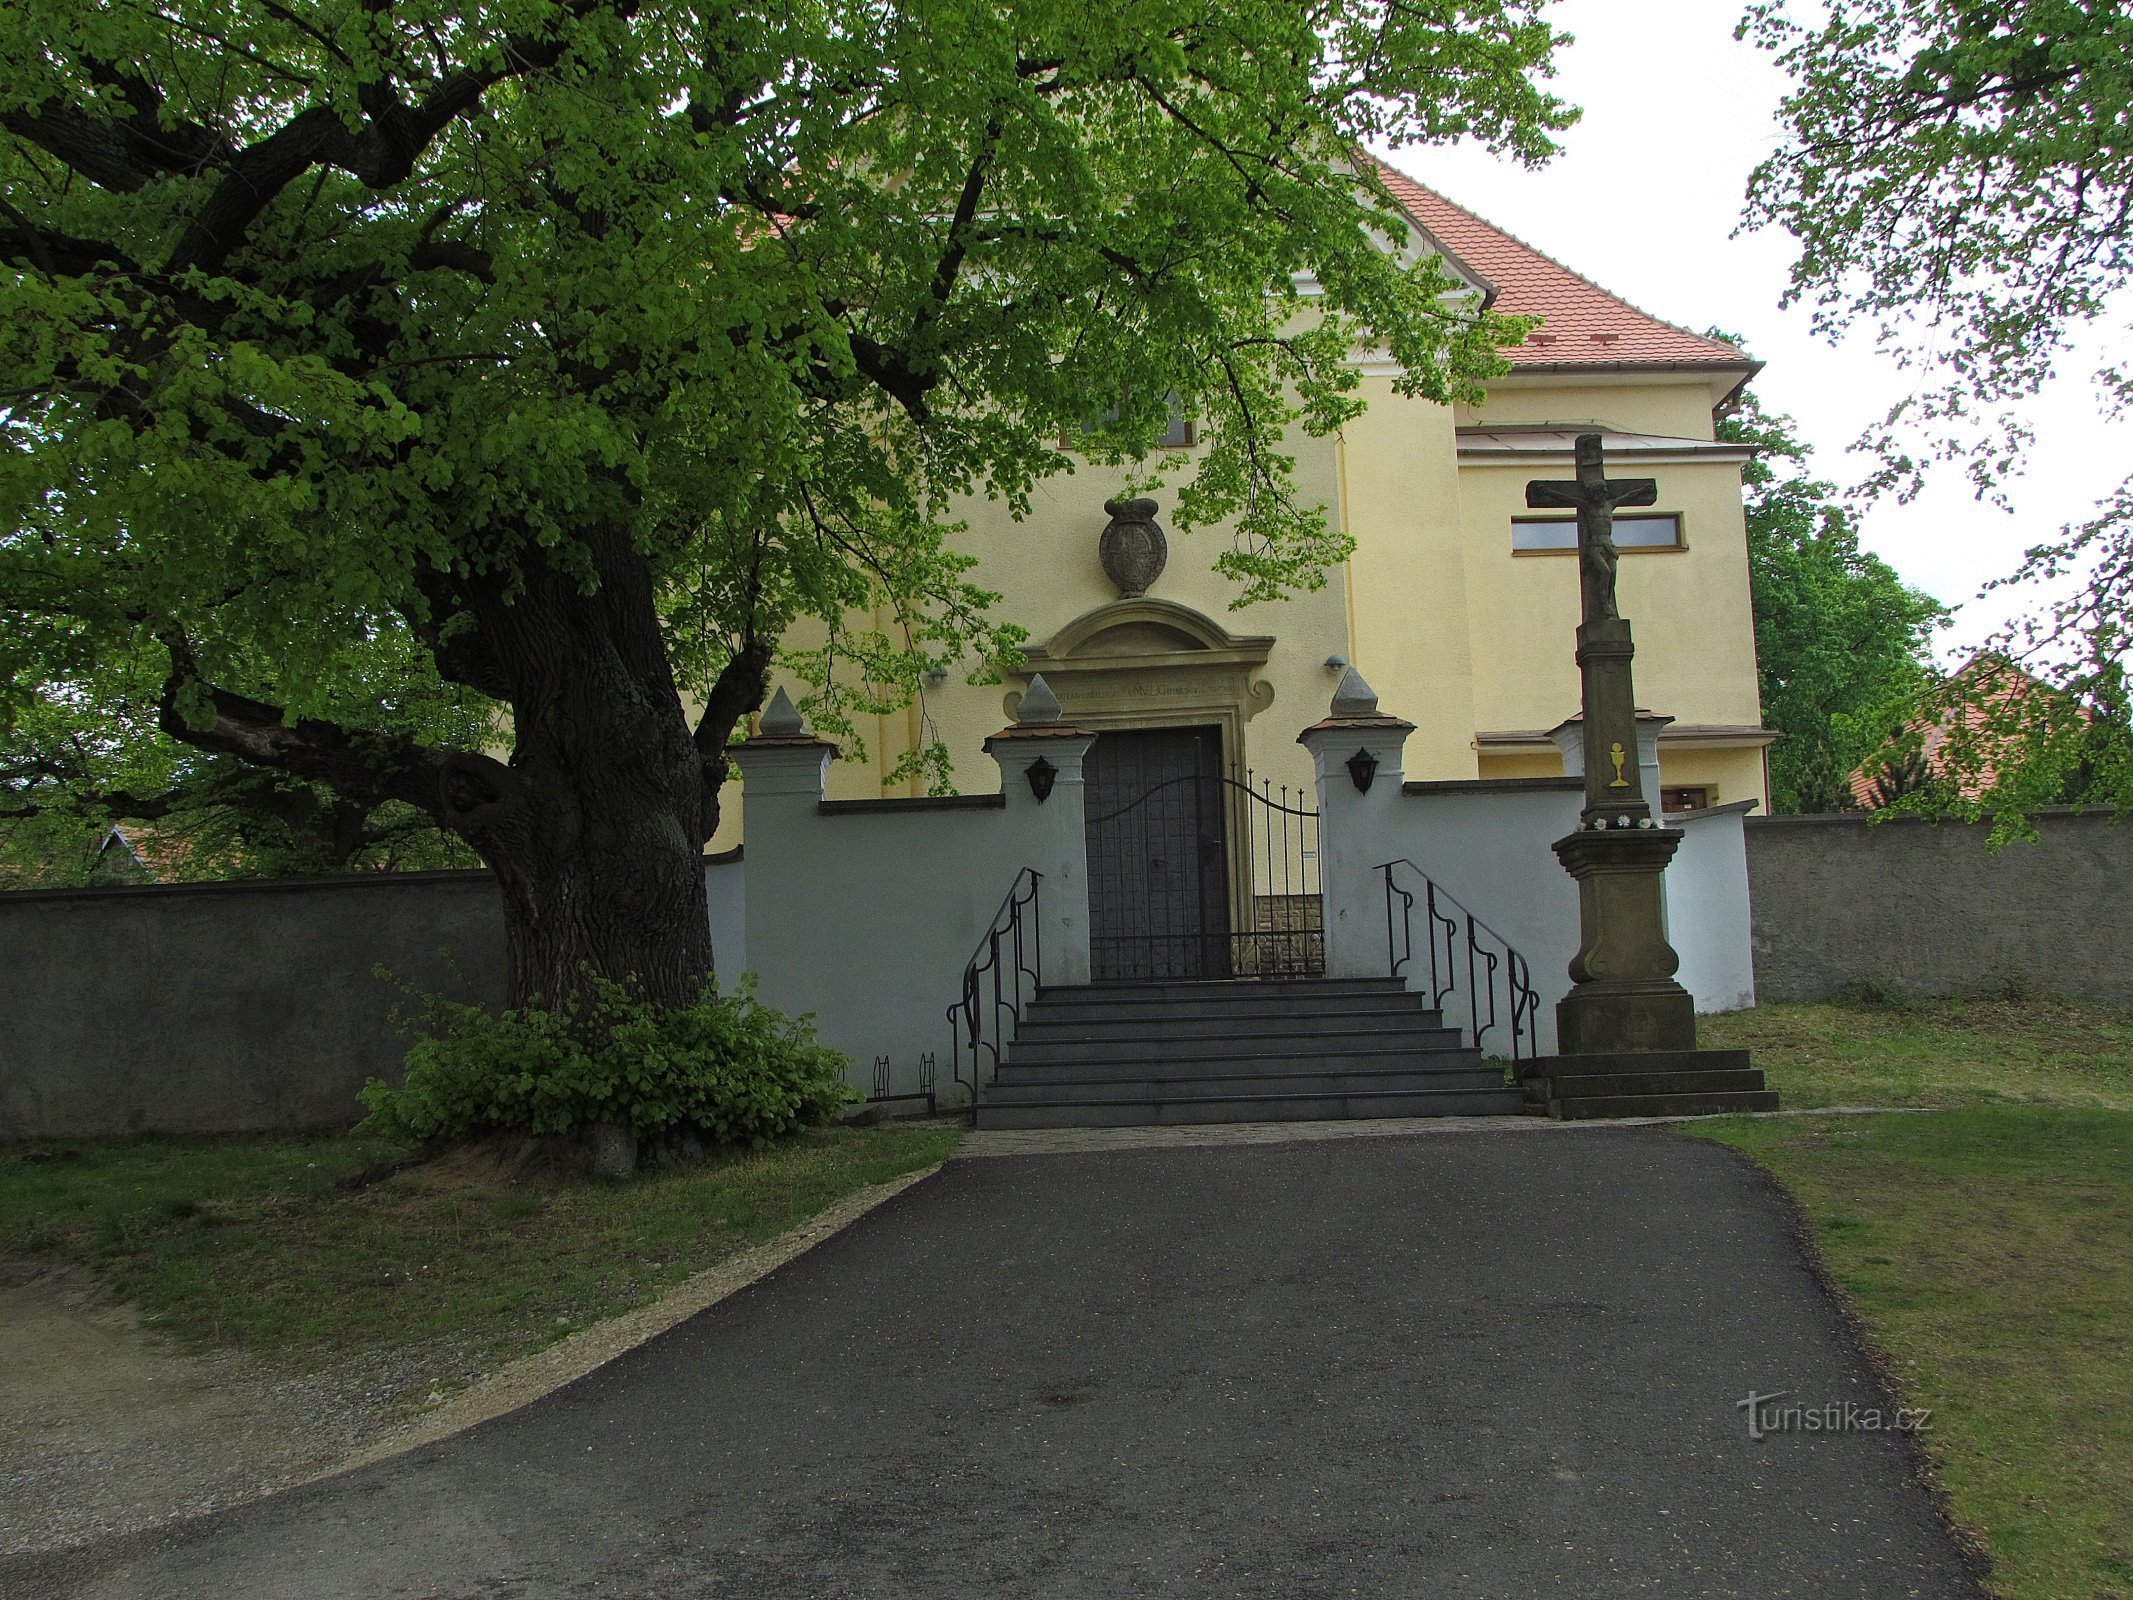 Kuželov - Igreja da Santíssima Trindade